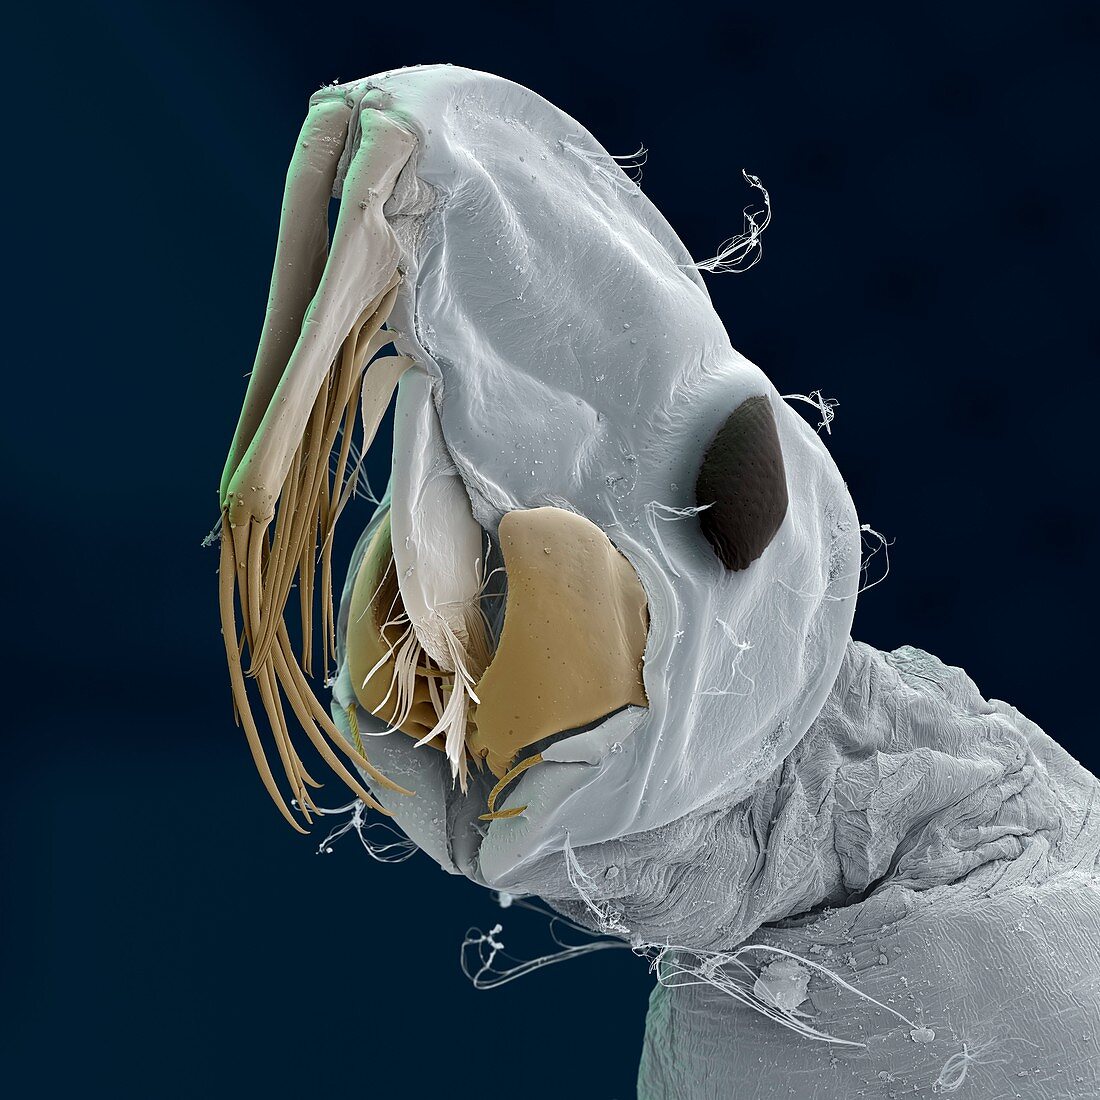 Phantom midge larva, SEM